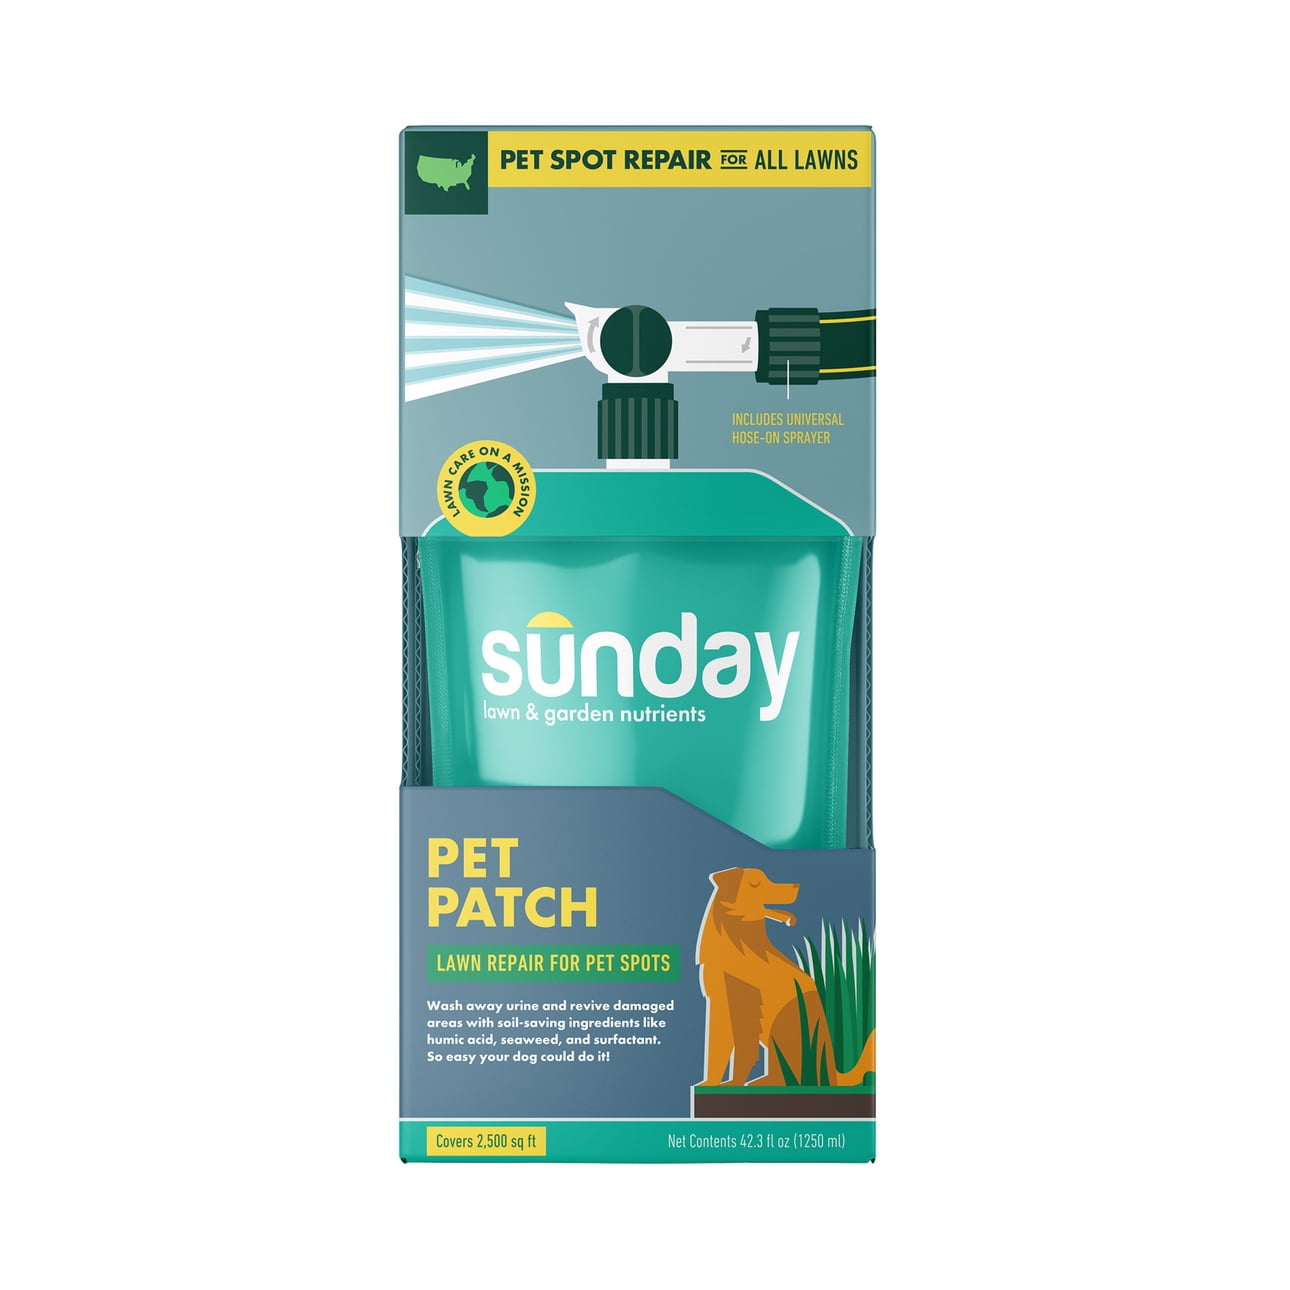 Sunday Pet Patch Lawn Repair for Pet Spots, 42.3 oz